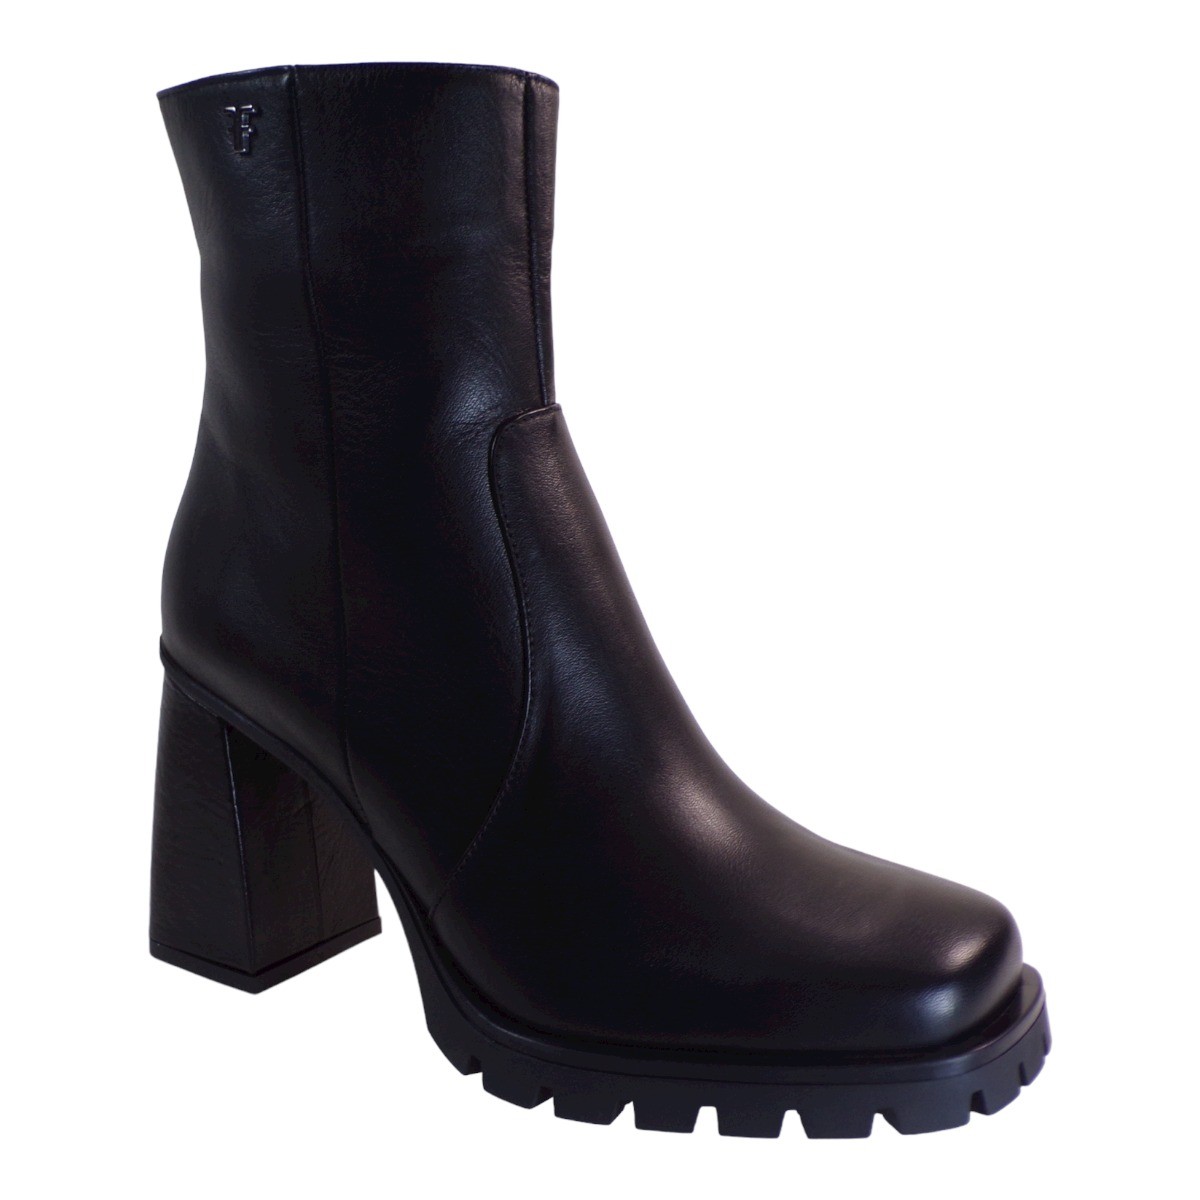 Fardoulis Shoes Γυναικεία Παπούτσια Μποτάκια 753-01 Μαύρο Δέρμα